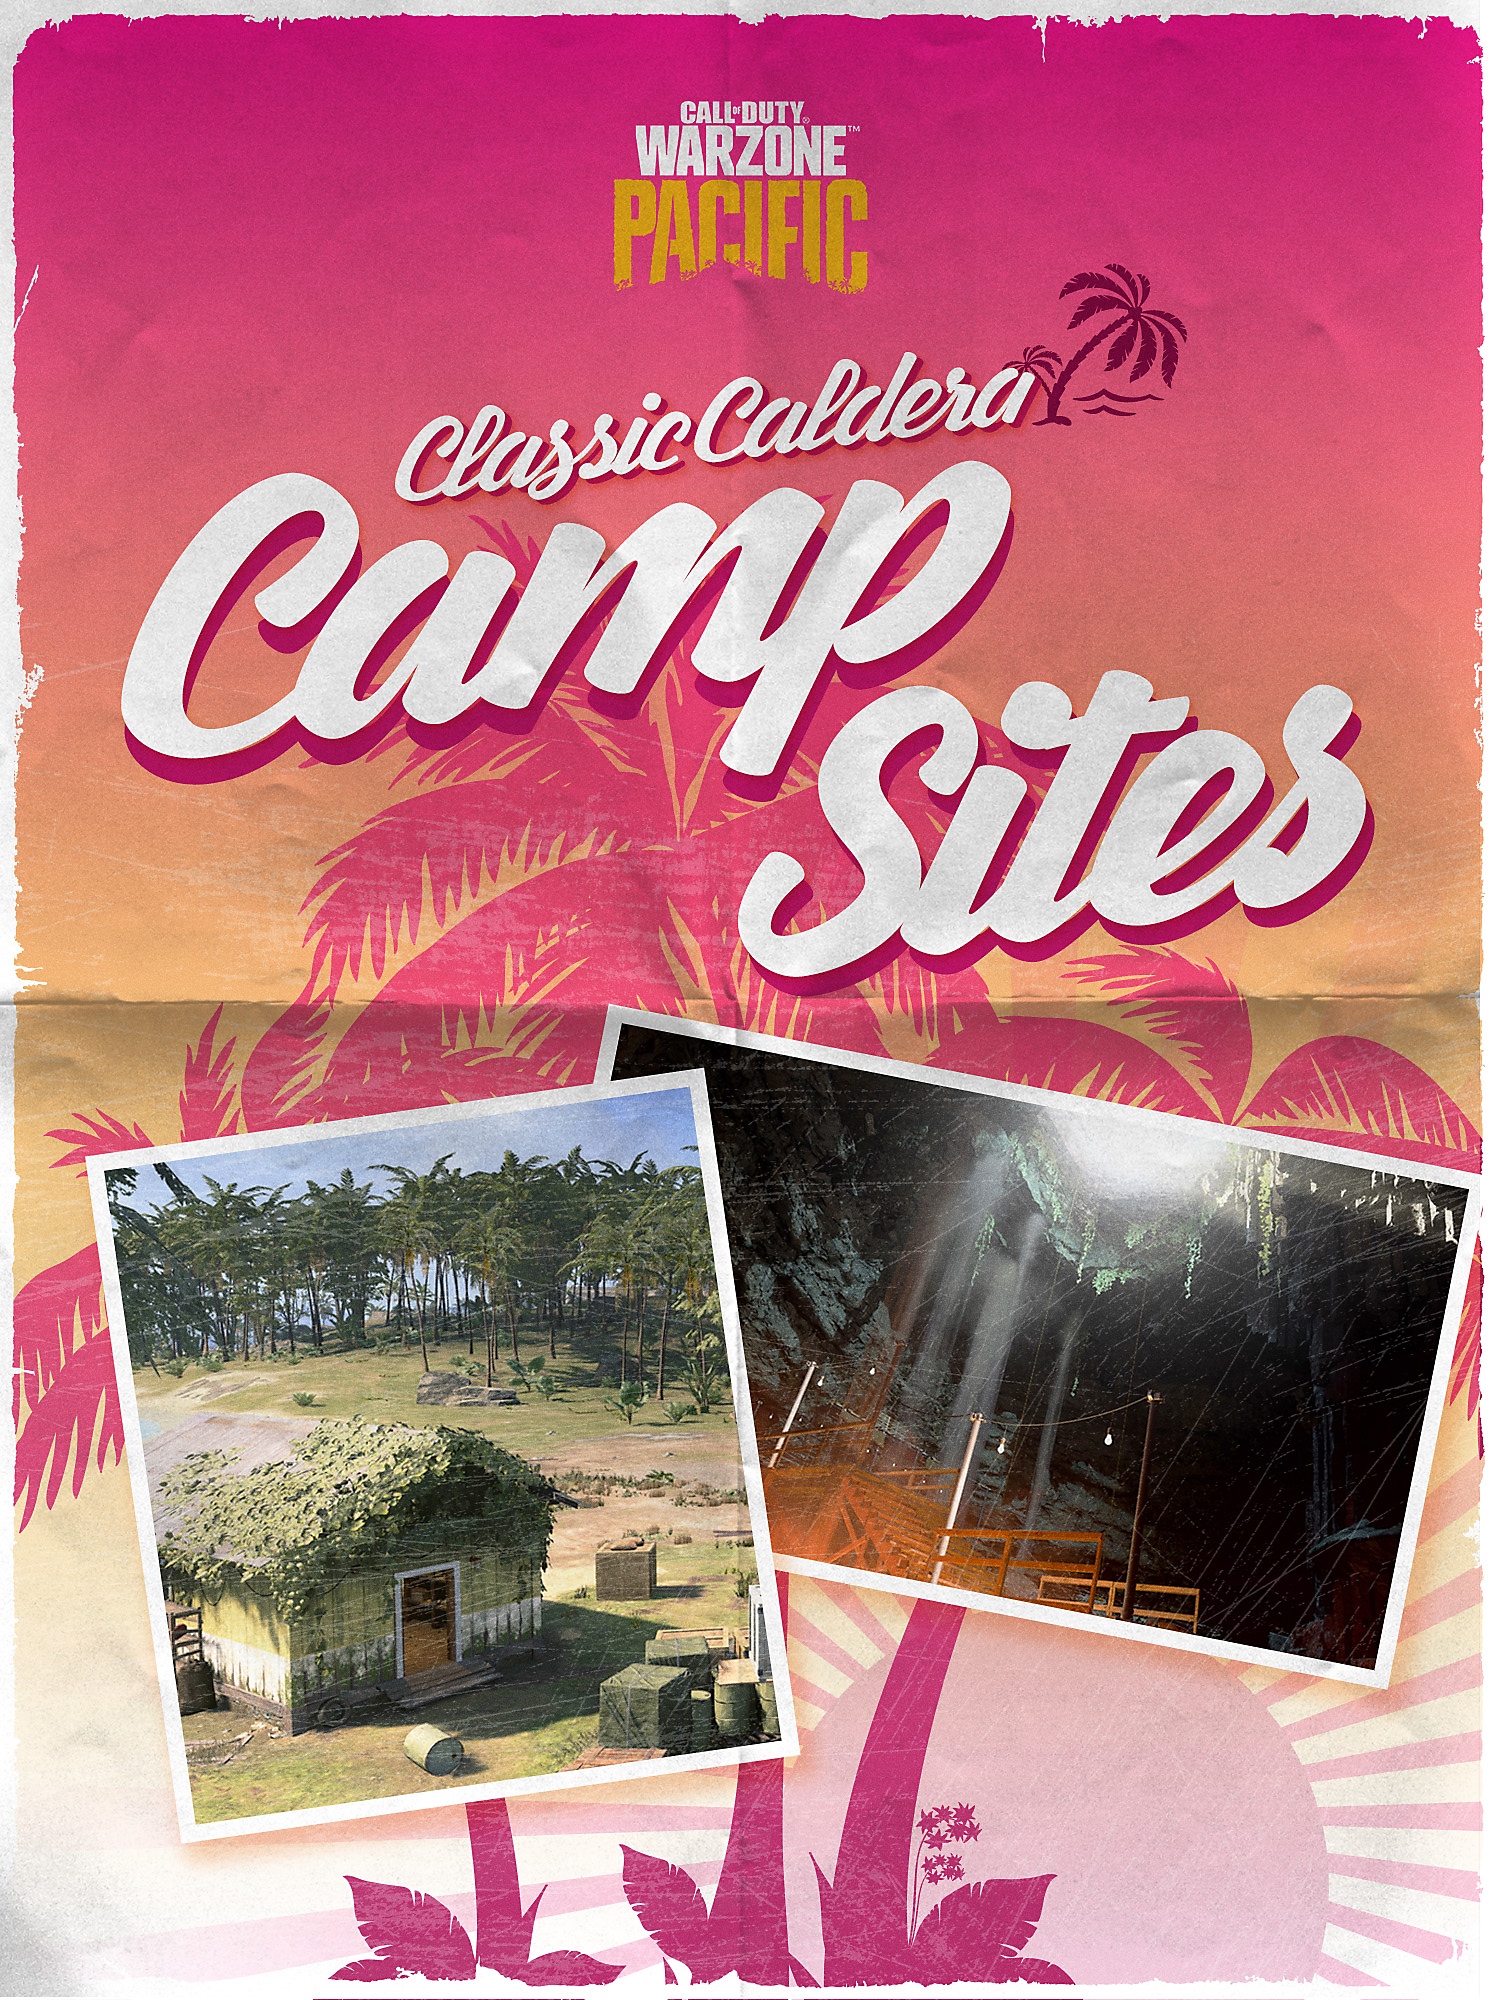 Coperta broșurii Locuri de campare clasice în Caldera